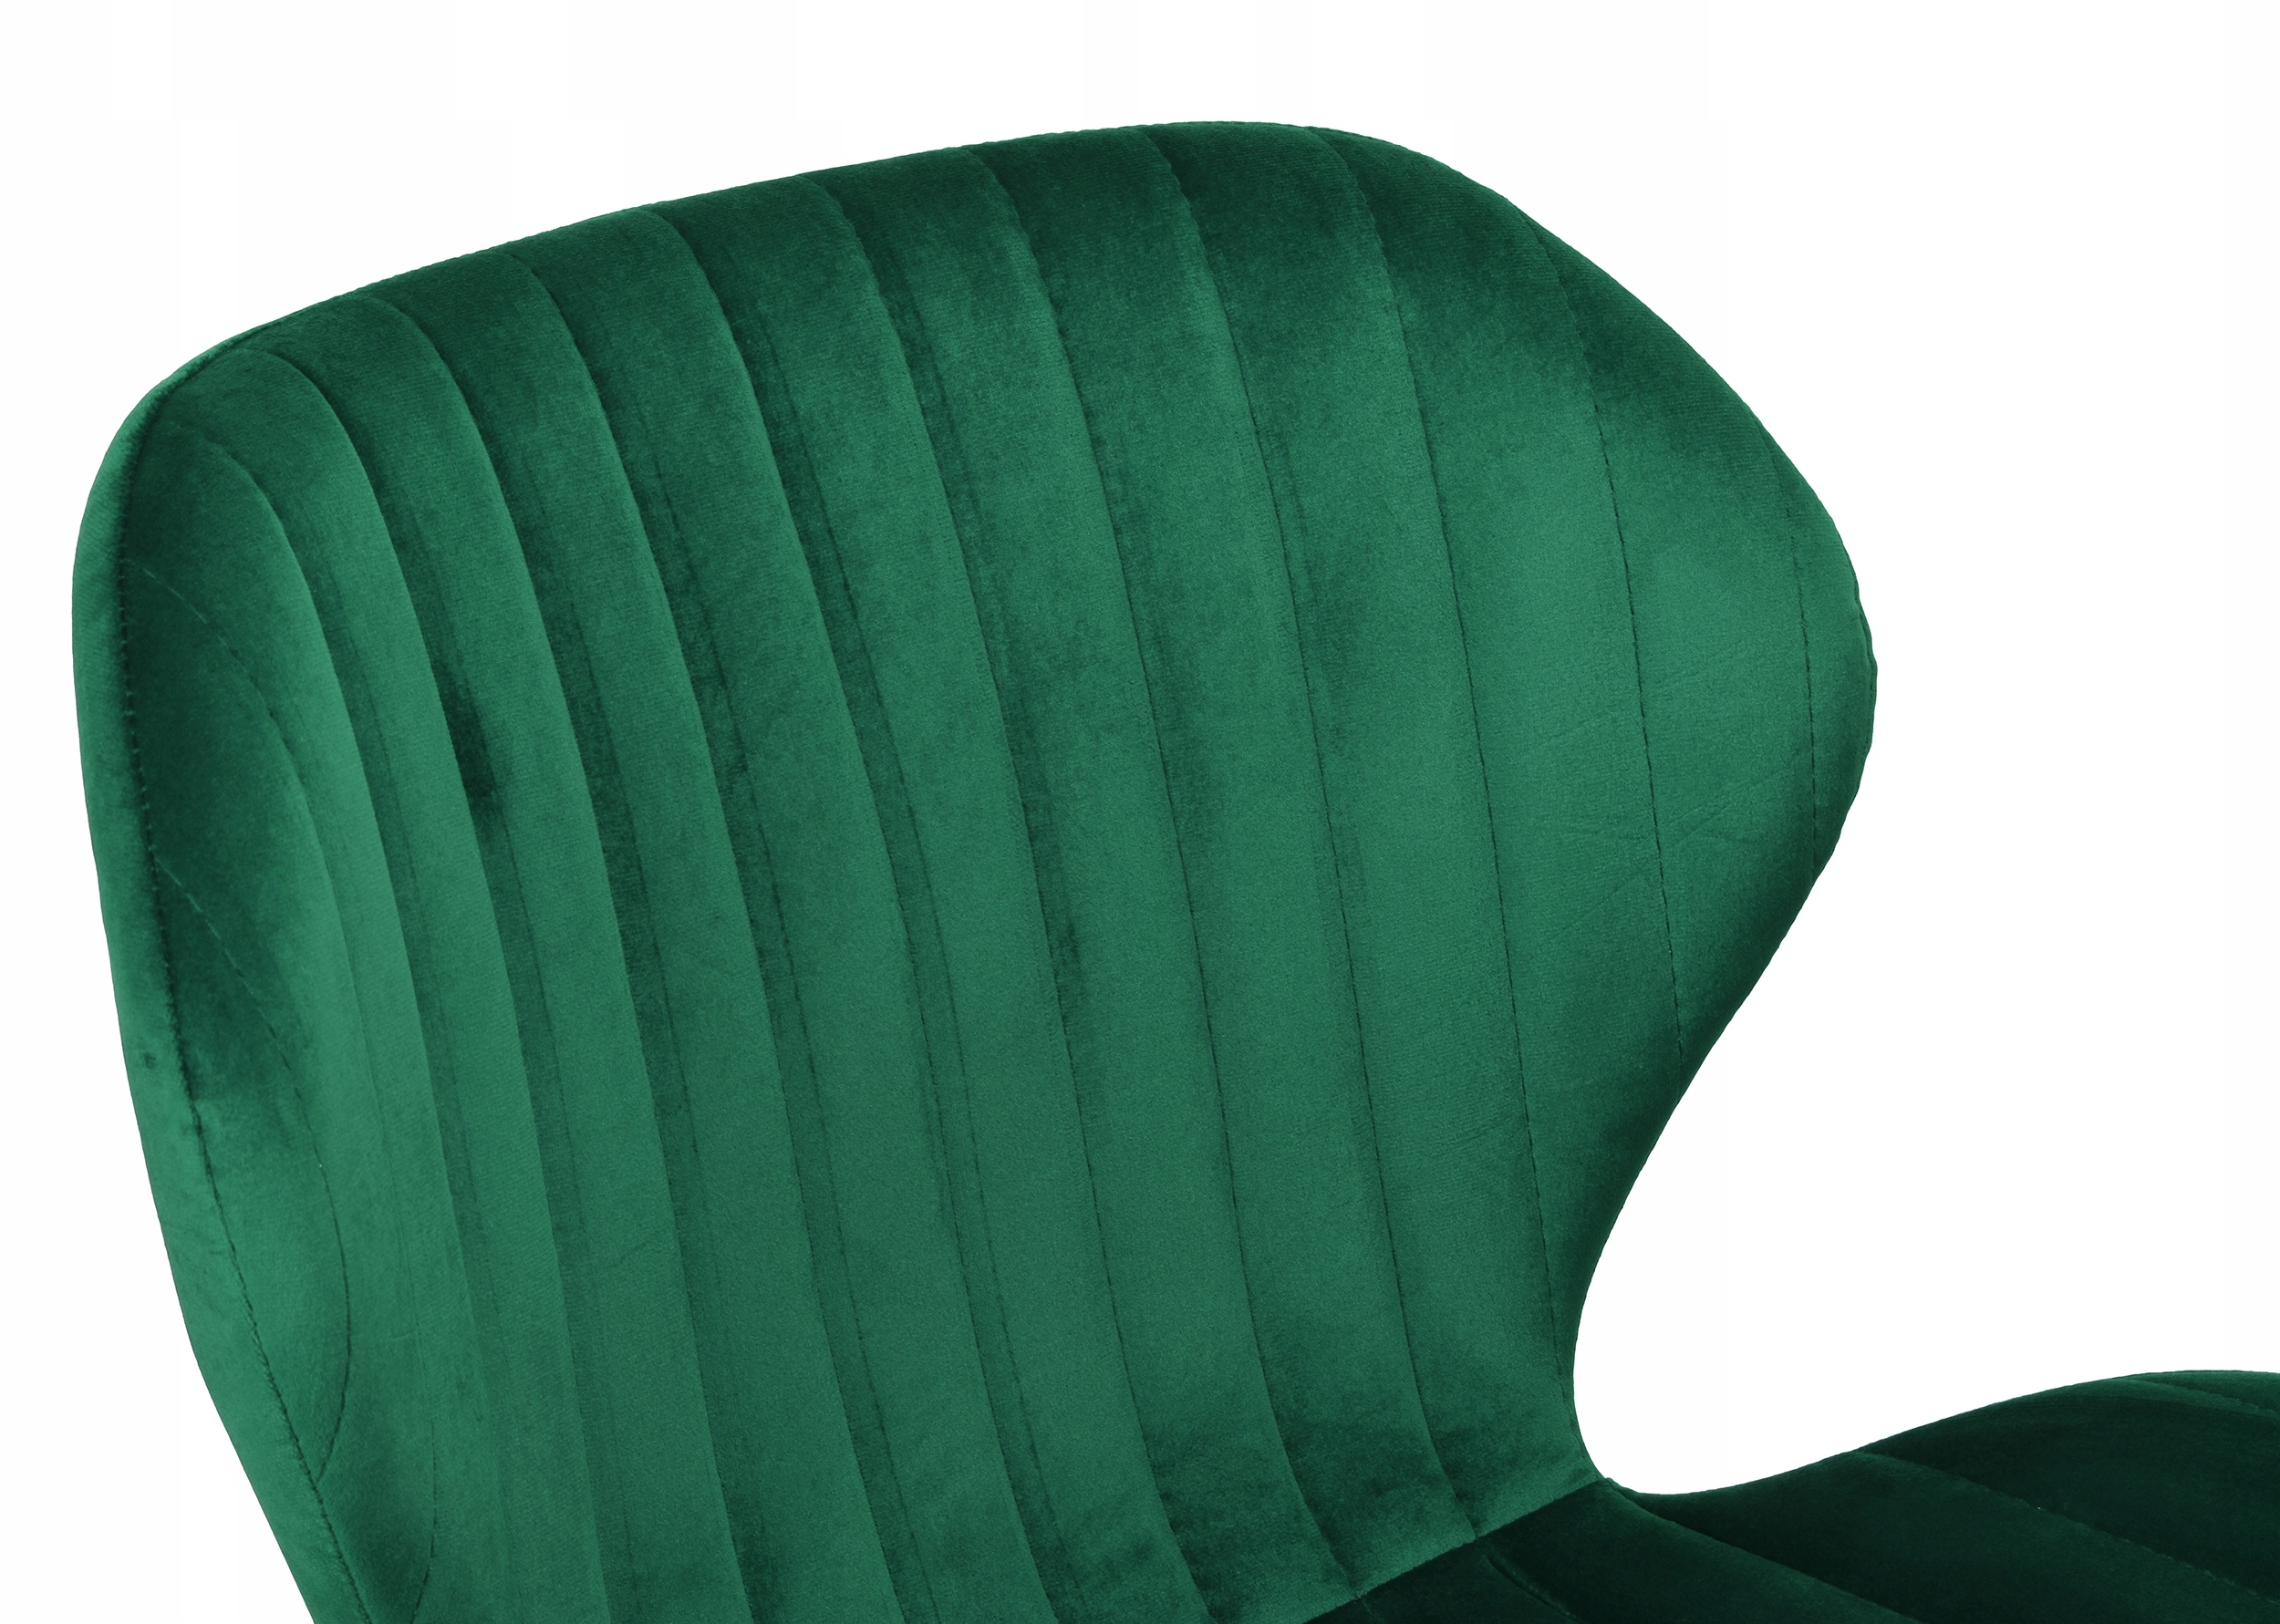 krzeslo tapicerowane aksamitne dallas ciemno-zielone